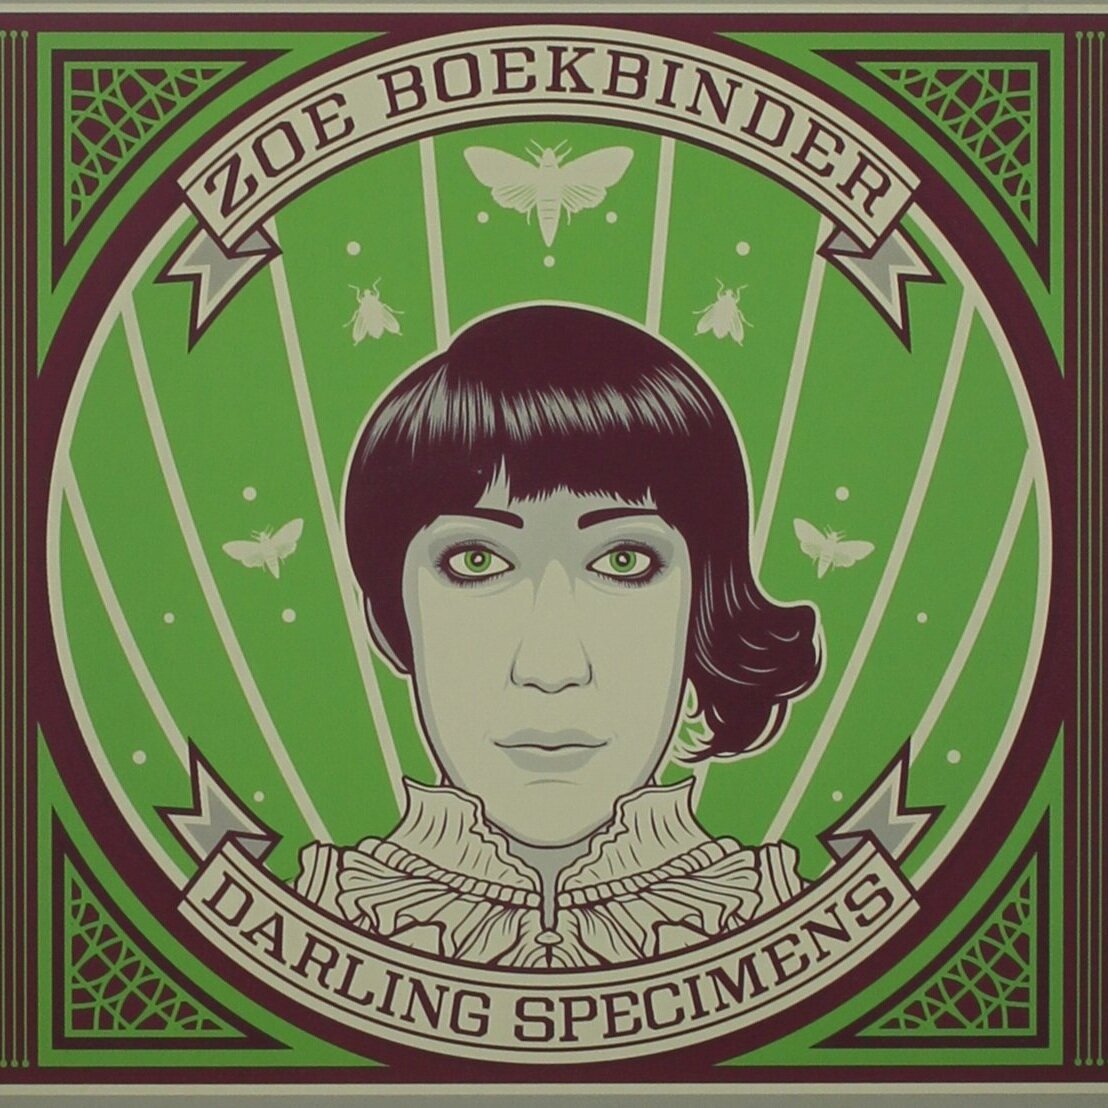 Zoe Boekbinder Wallpapers